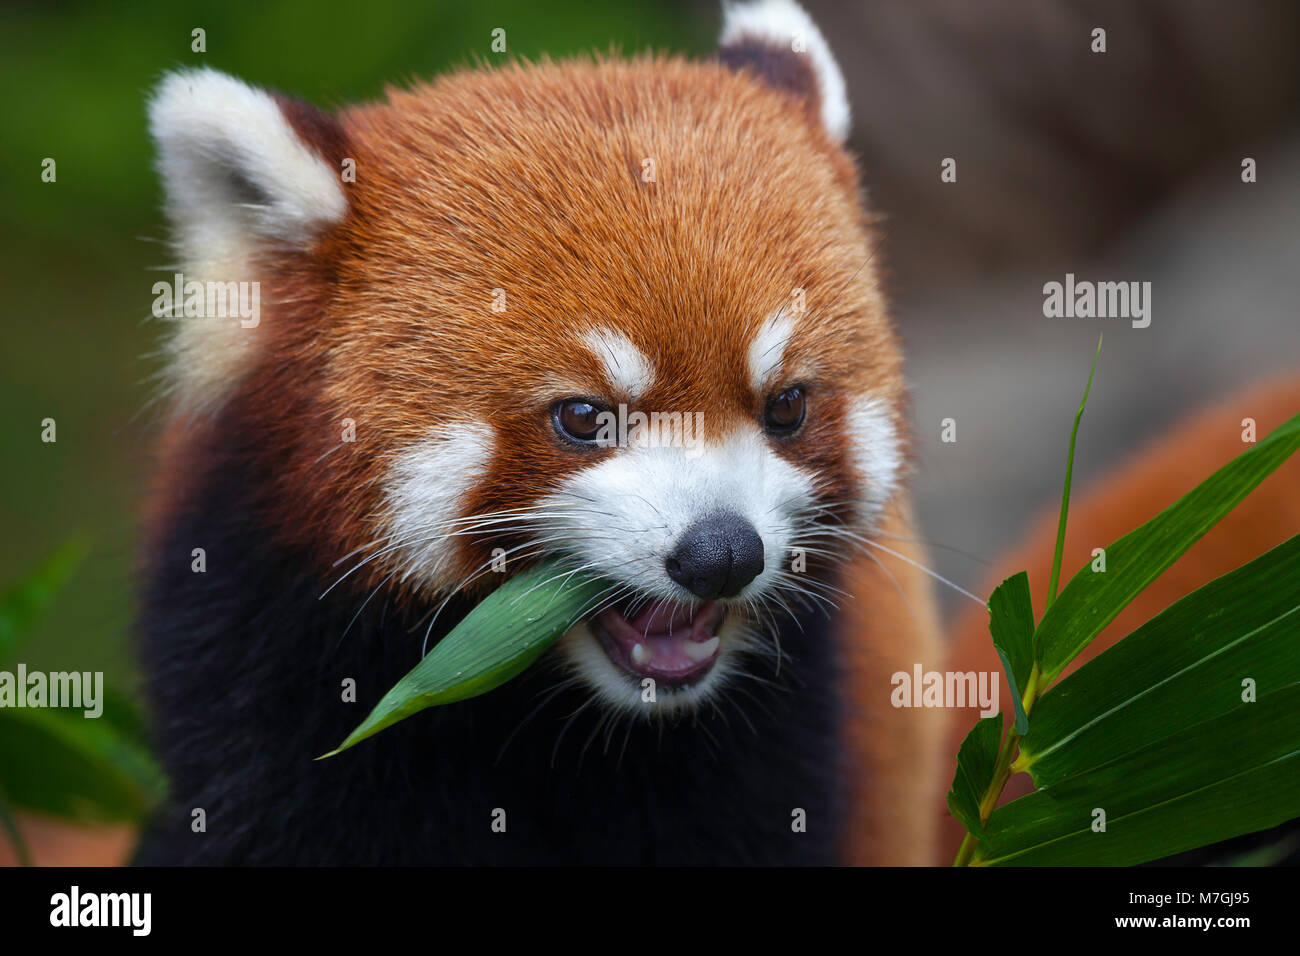 Il panda rosso, Ailurus fulgens, o 'shining cat", è un piccolo mammifero arboree e la sola specie del genere Ailurus. Cina. Foto Stock